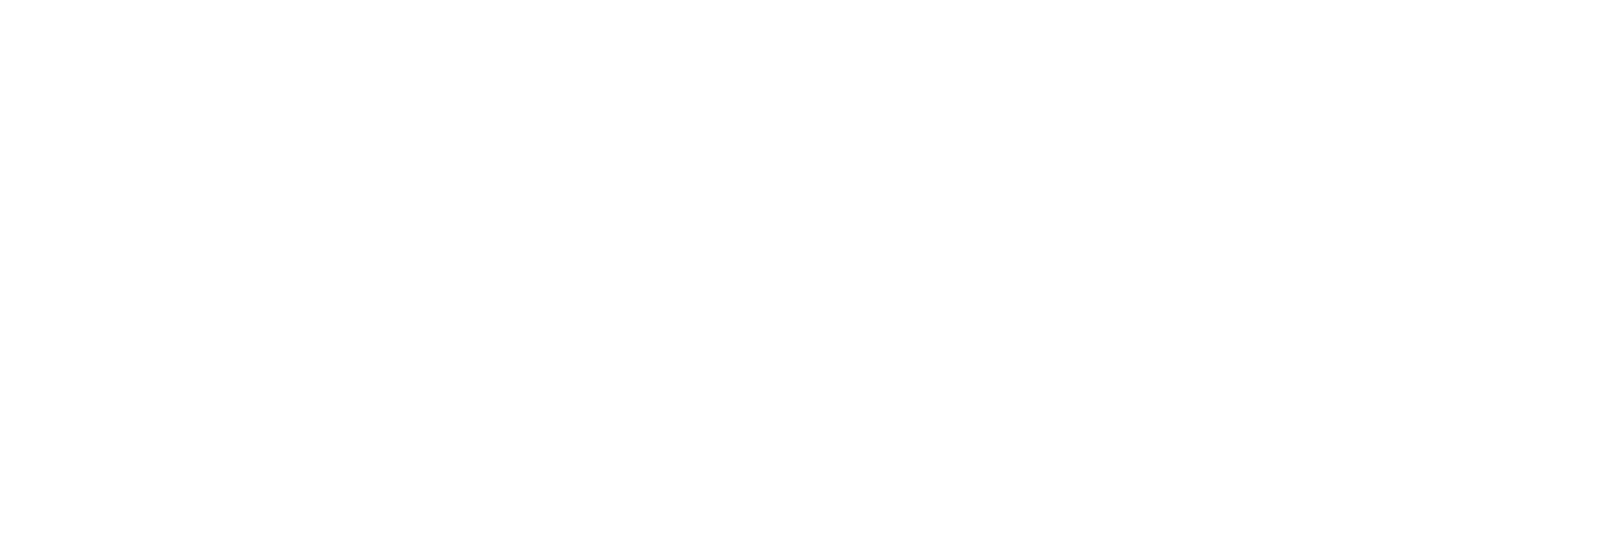 [sponsor] Starchain ventures